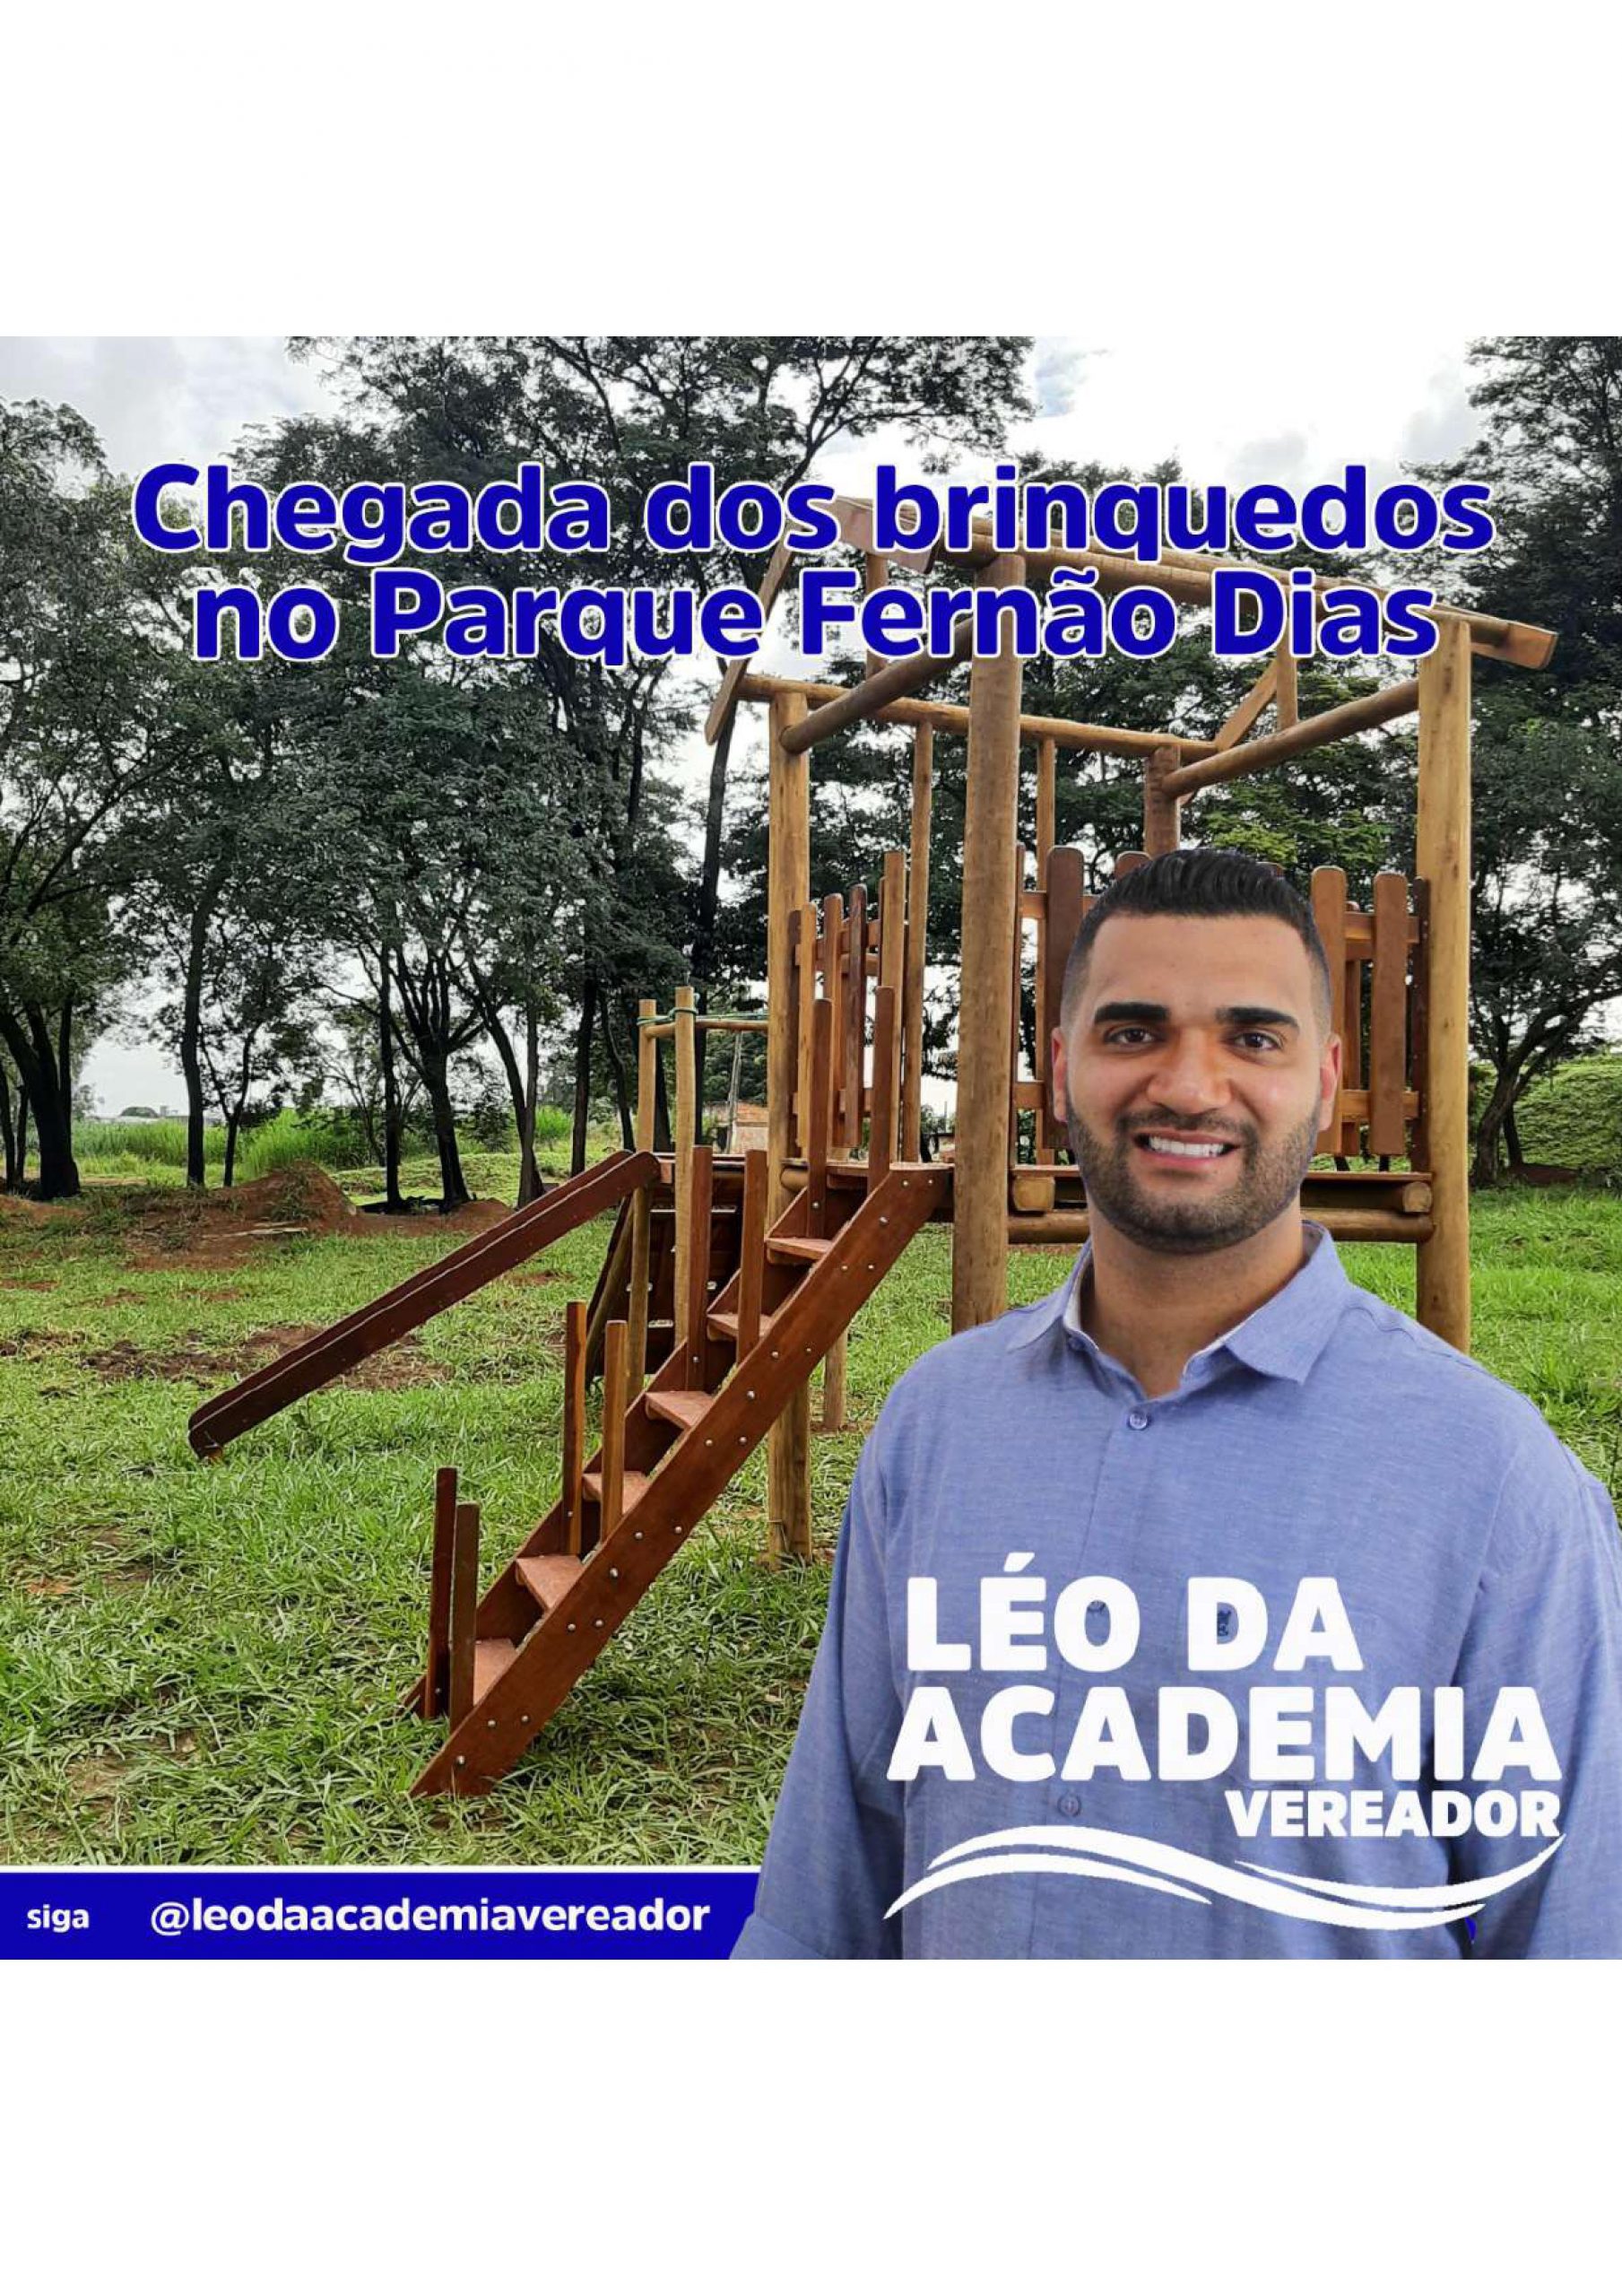 Vereador Léo da Academia participa de instalação de brinquedos no Parque Fernão Dias